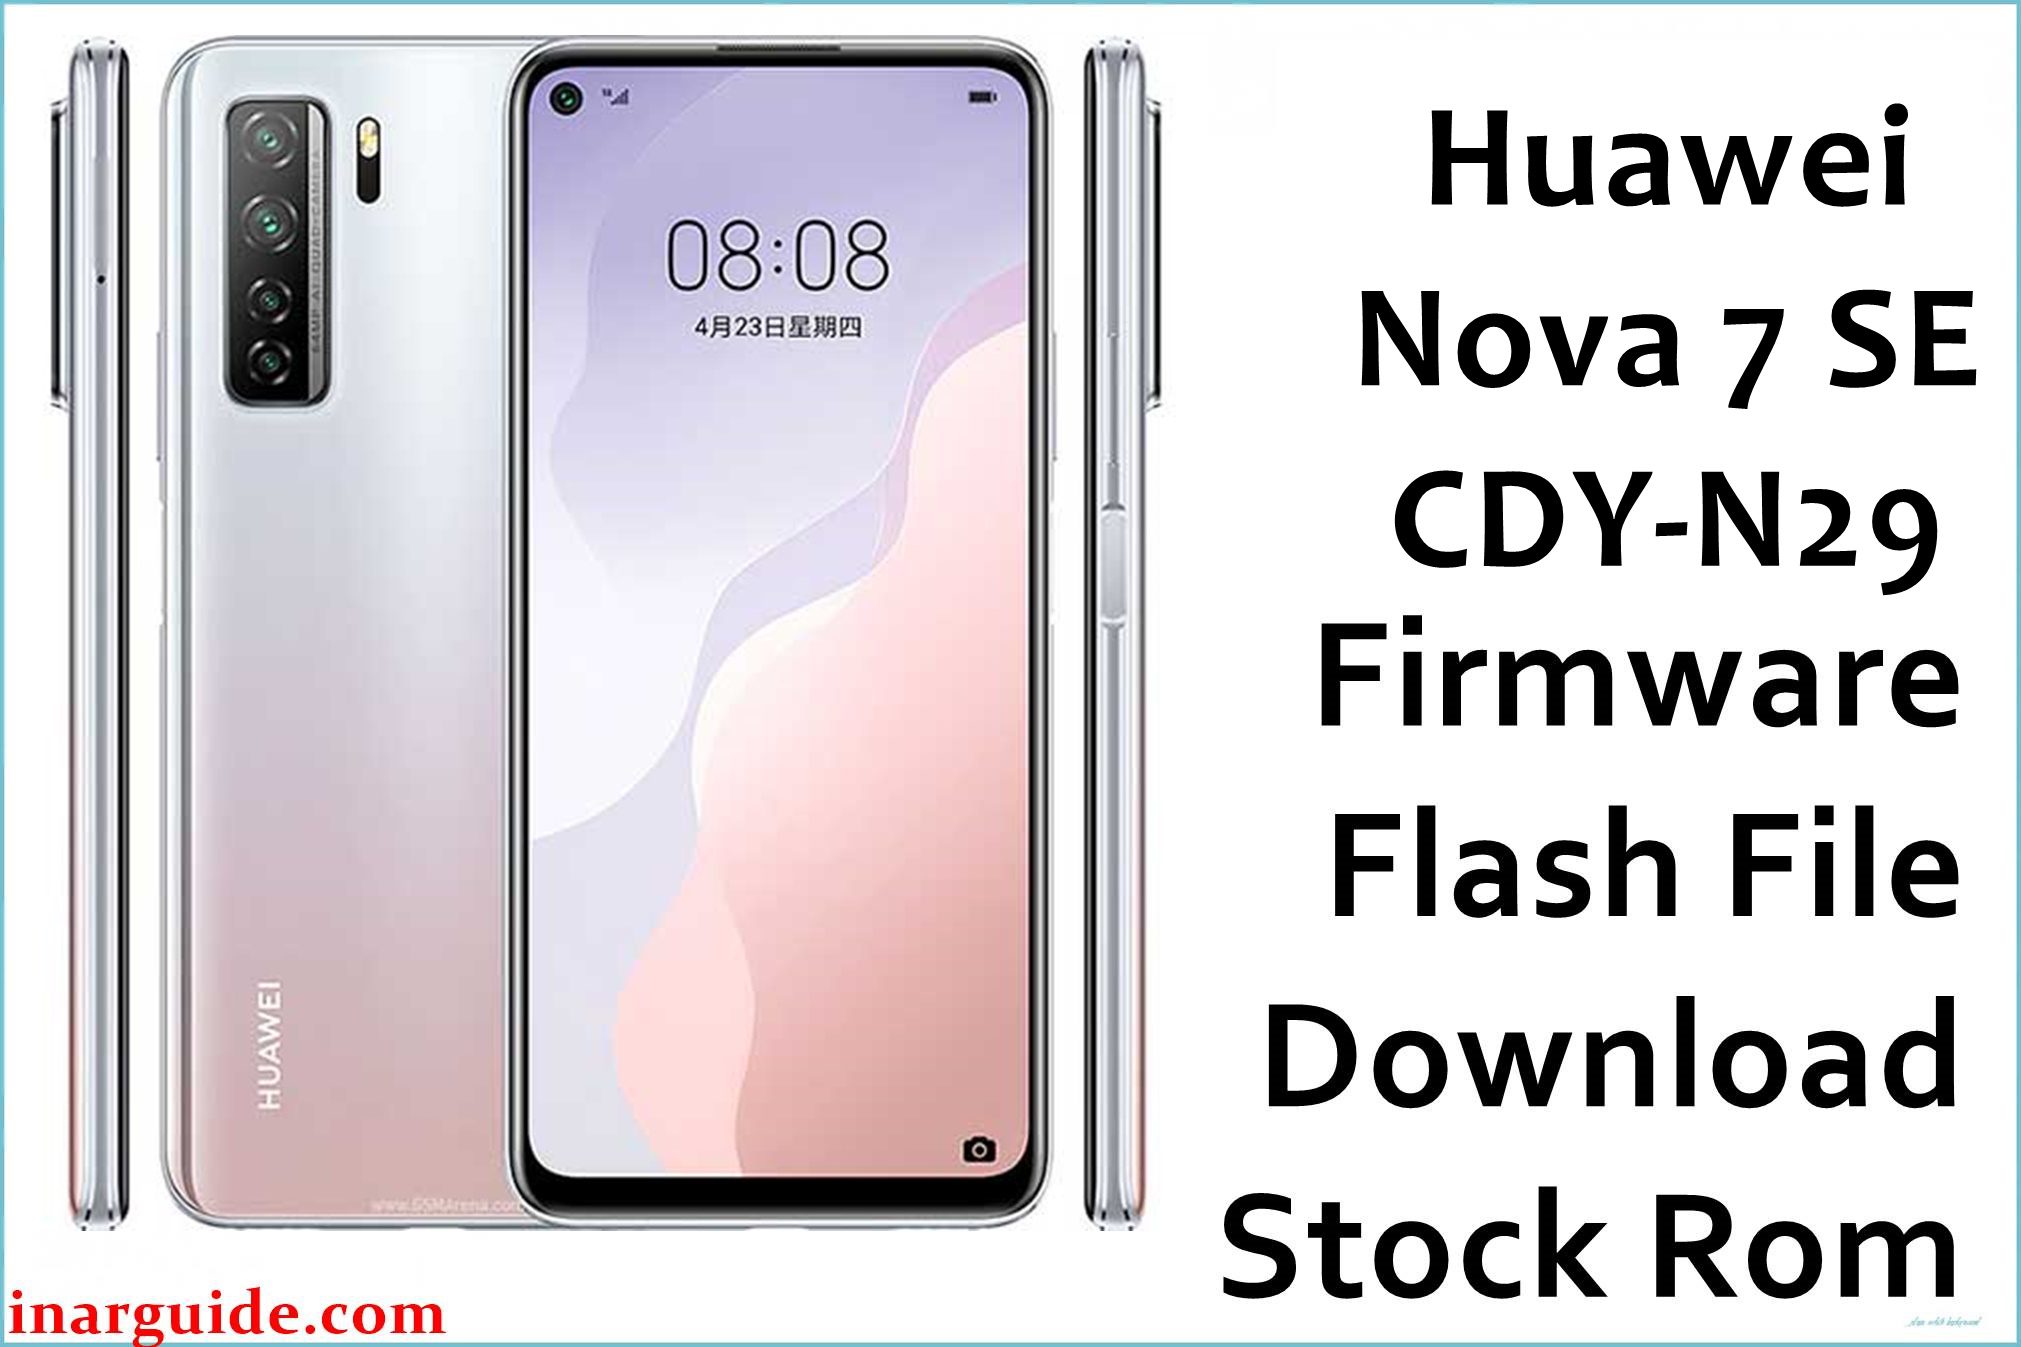 Huawei Nova 7 SE CDY N29